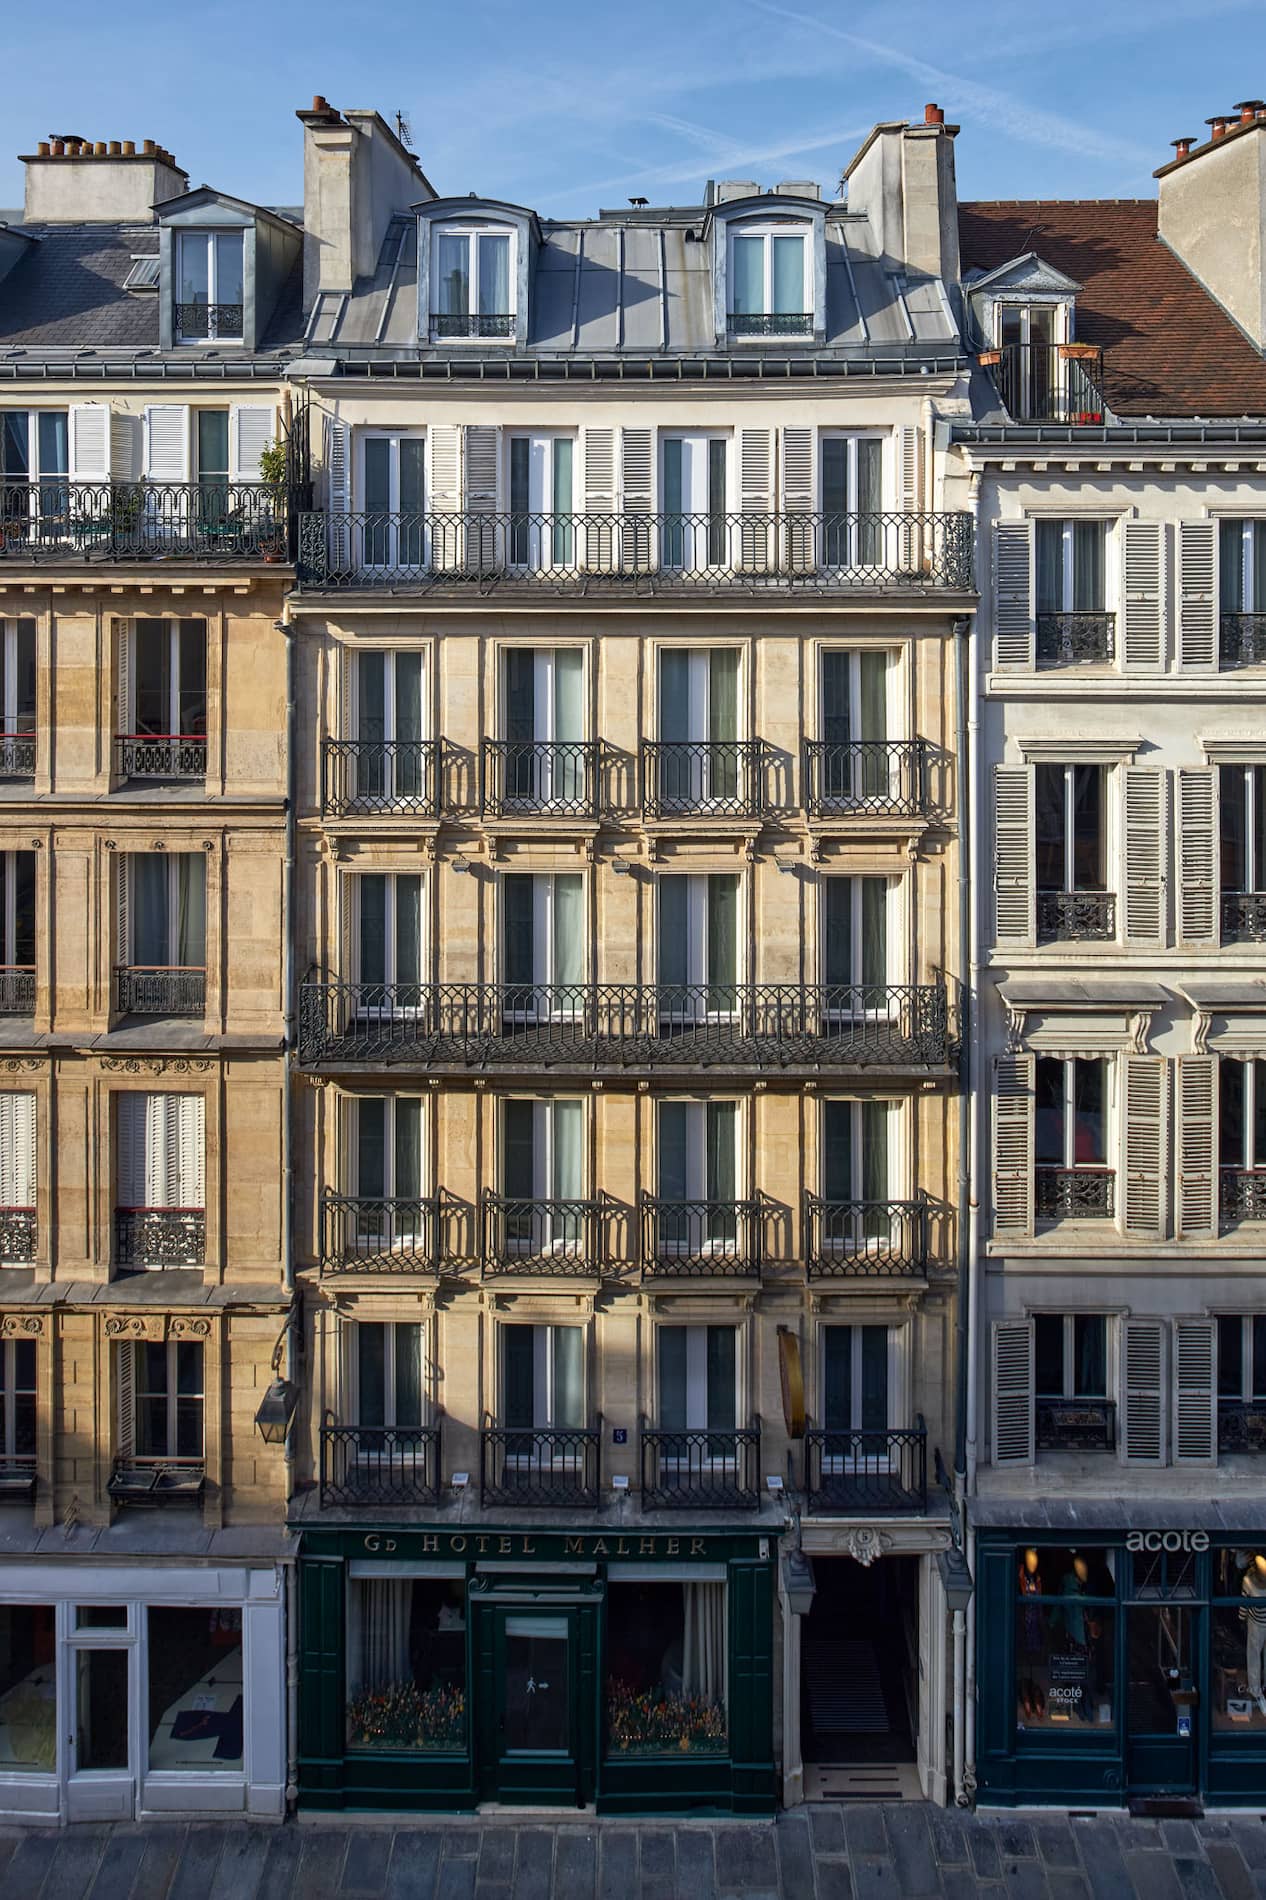 Grand Hotel Malher Paris - Le Marais